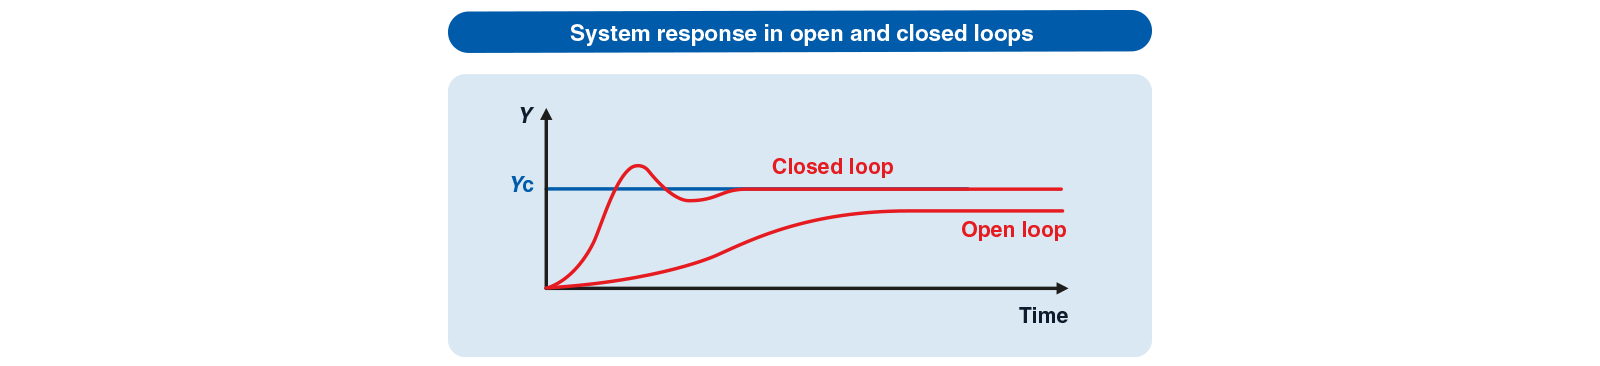 resposta do sistema em circuito fechado ou aberto pt